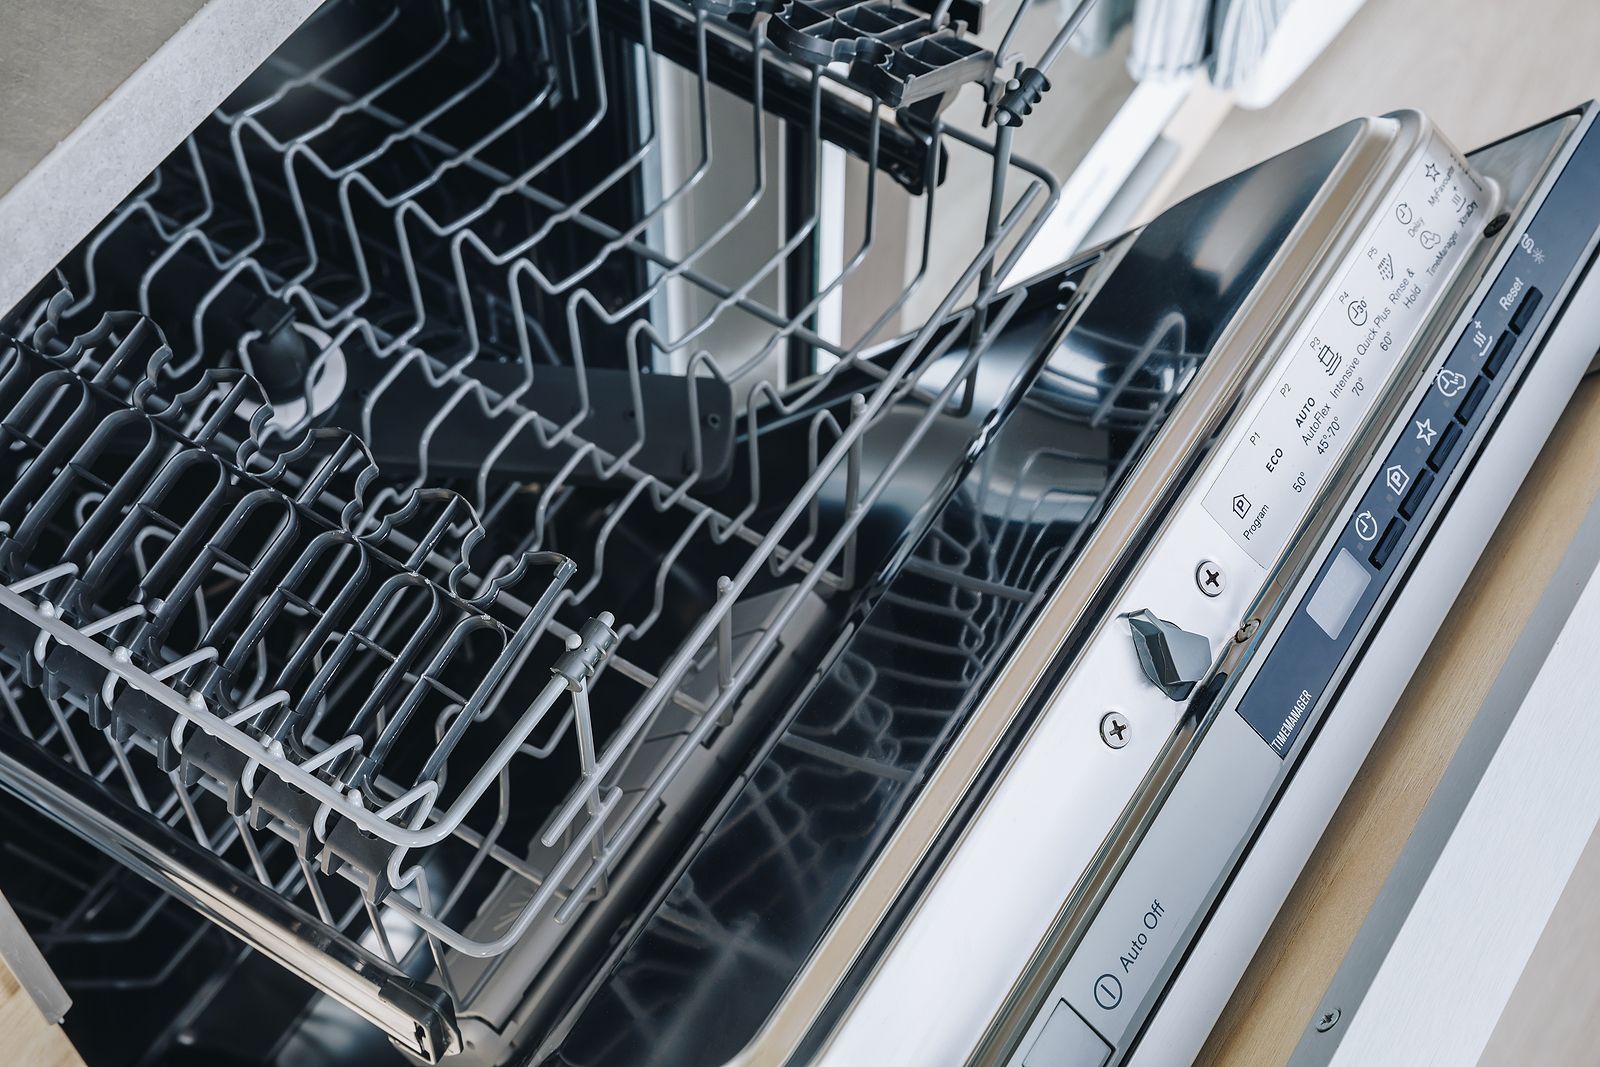 Cosas que puedes meter en el lavavajillas para facilitarte la limpieza del hogar